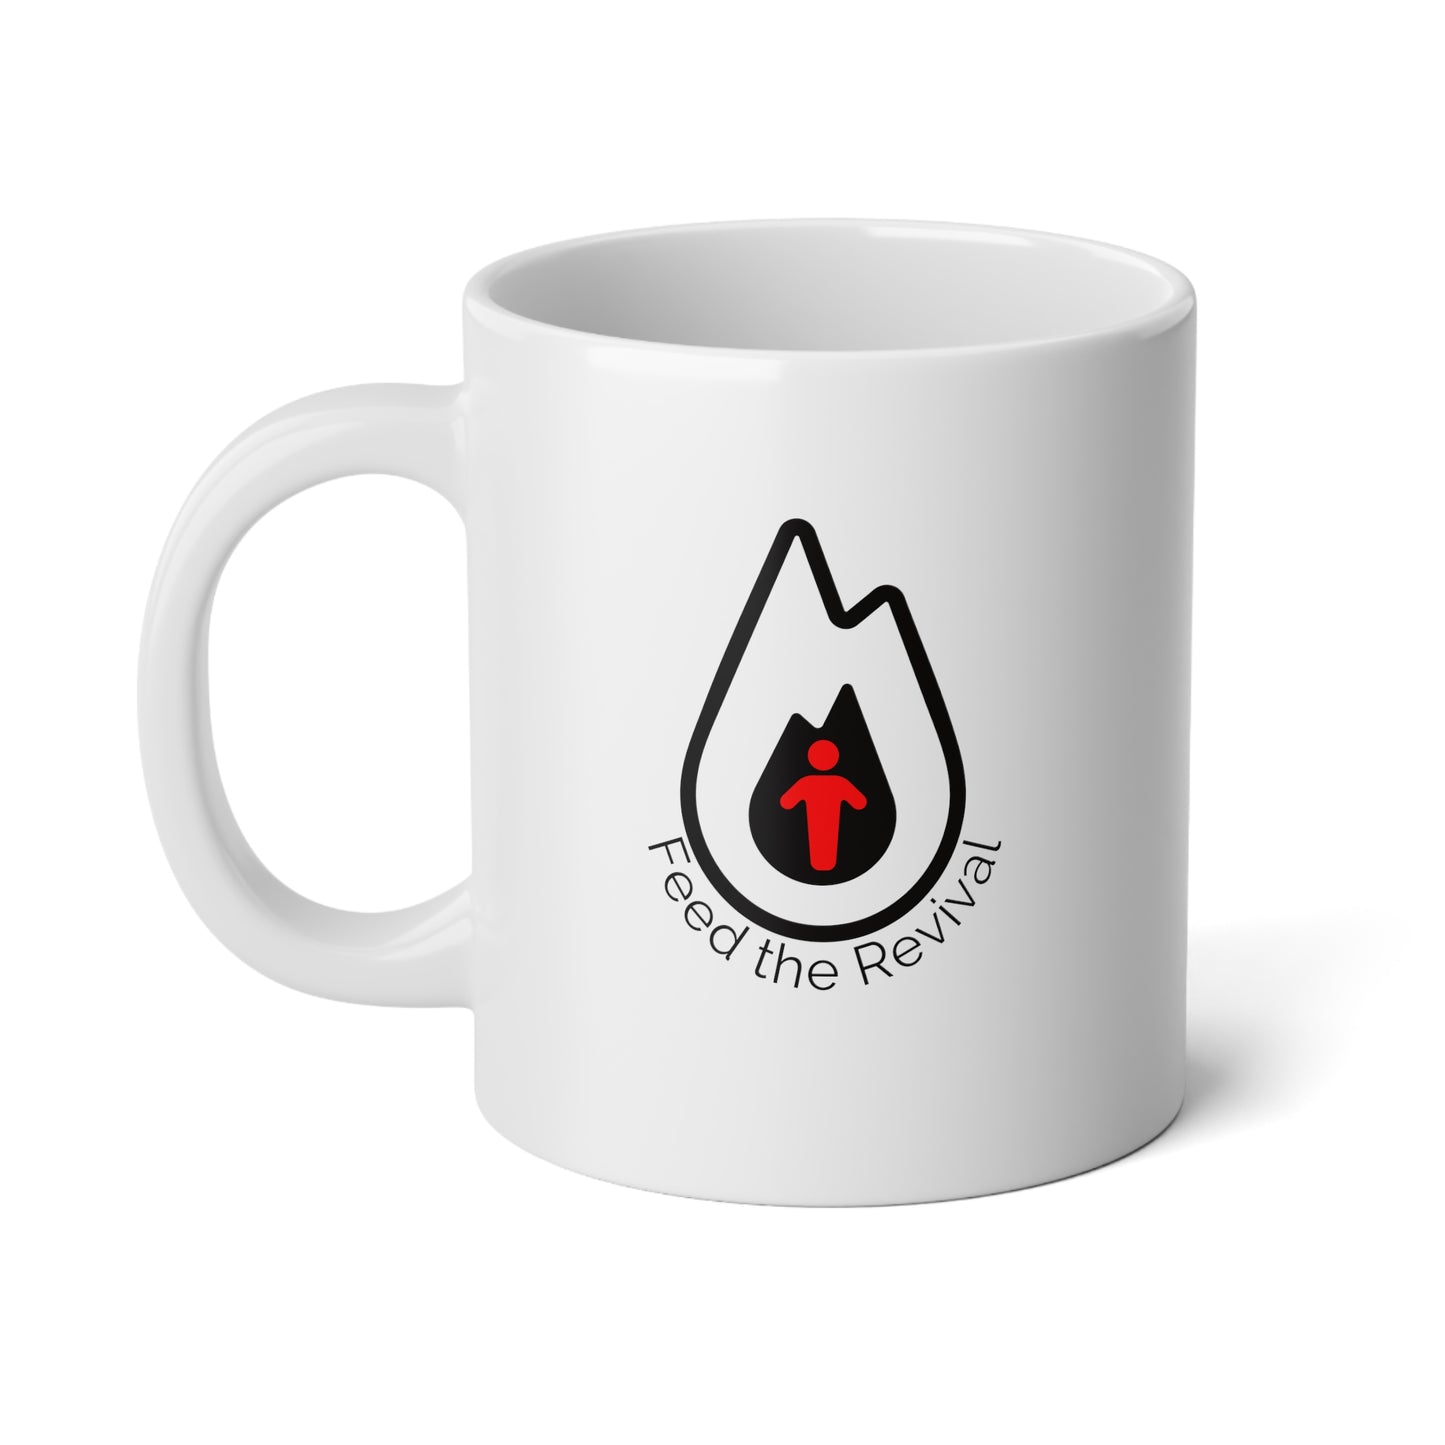 Feed the Revival - double logo - 20oz mug